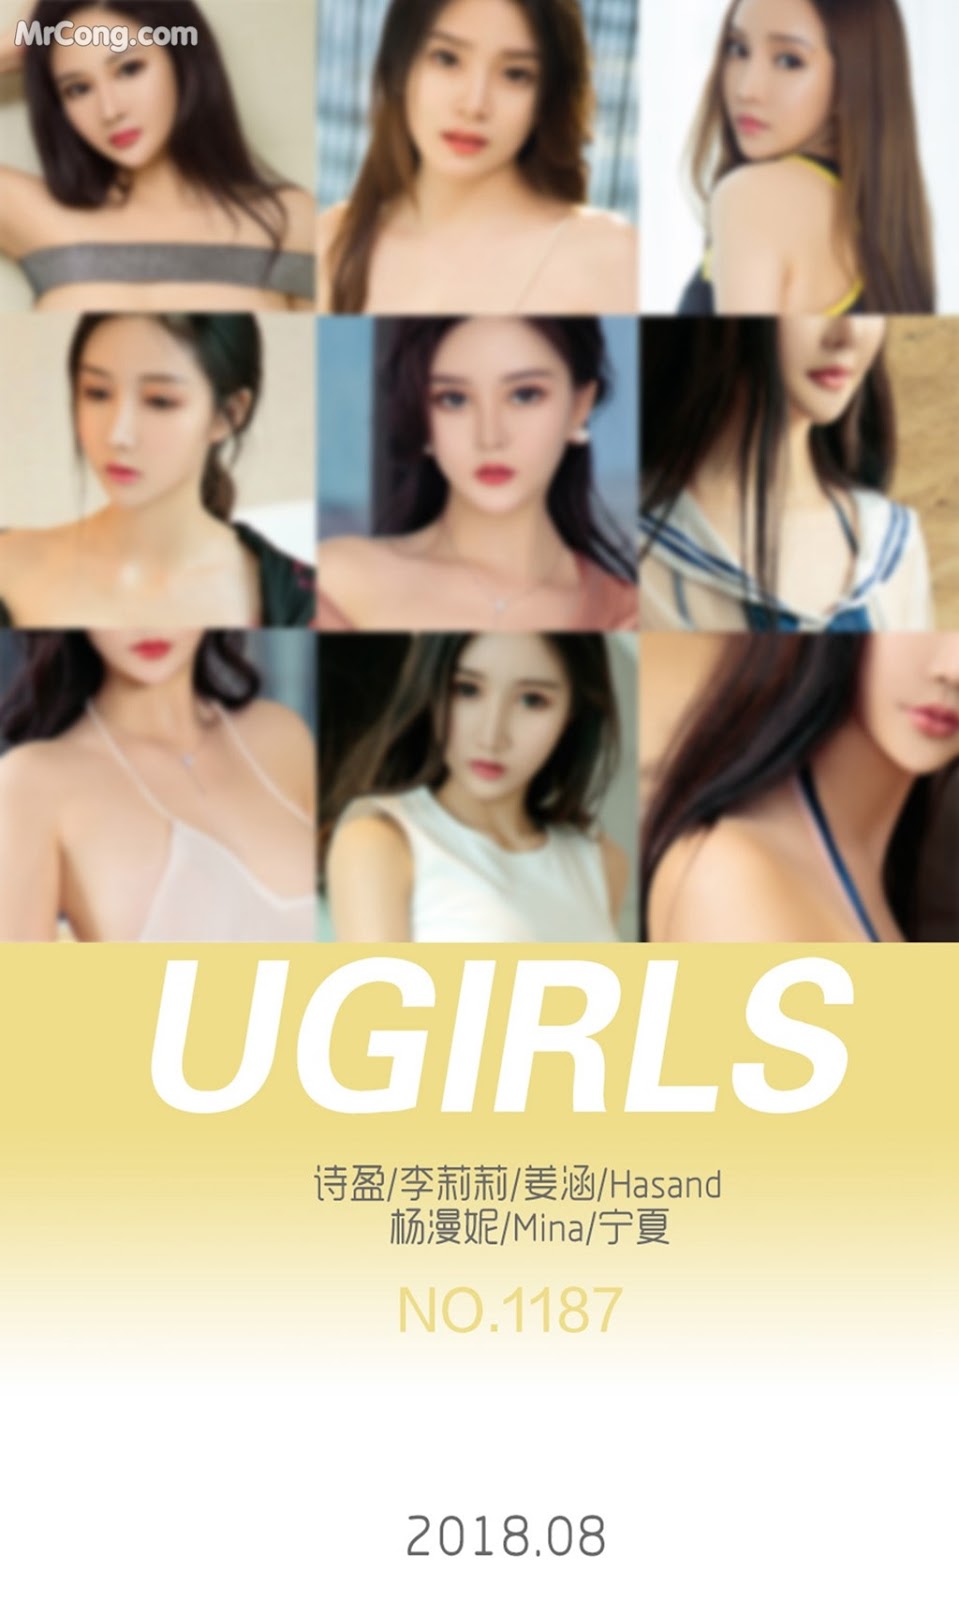 UGIRLS - Ai You Wu App No.1187: Various Models (35 photos) photo 2-6